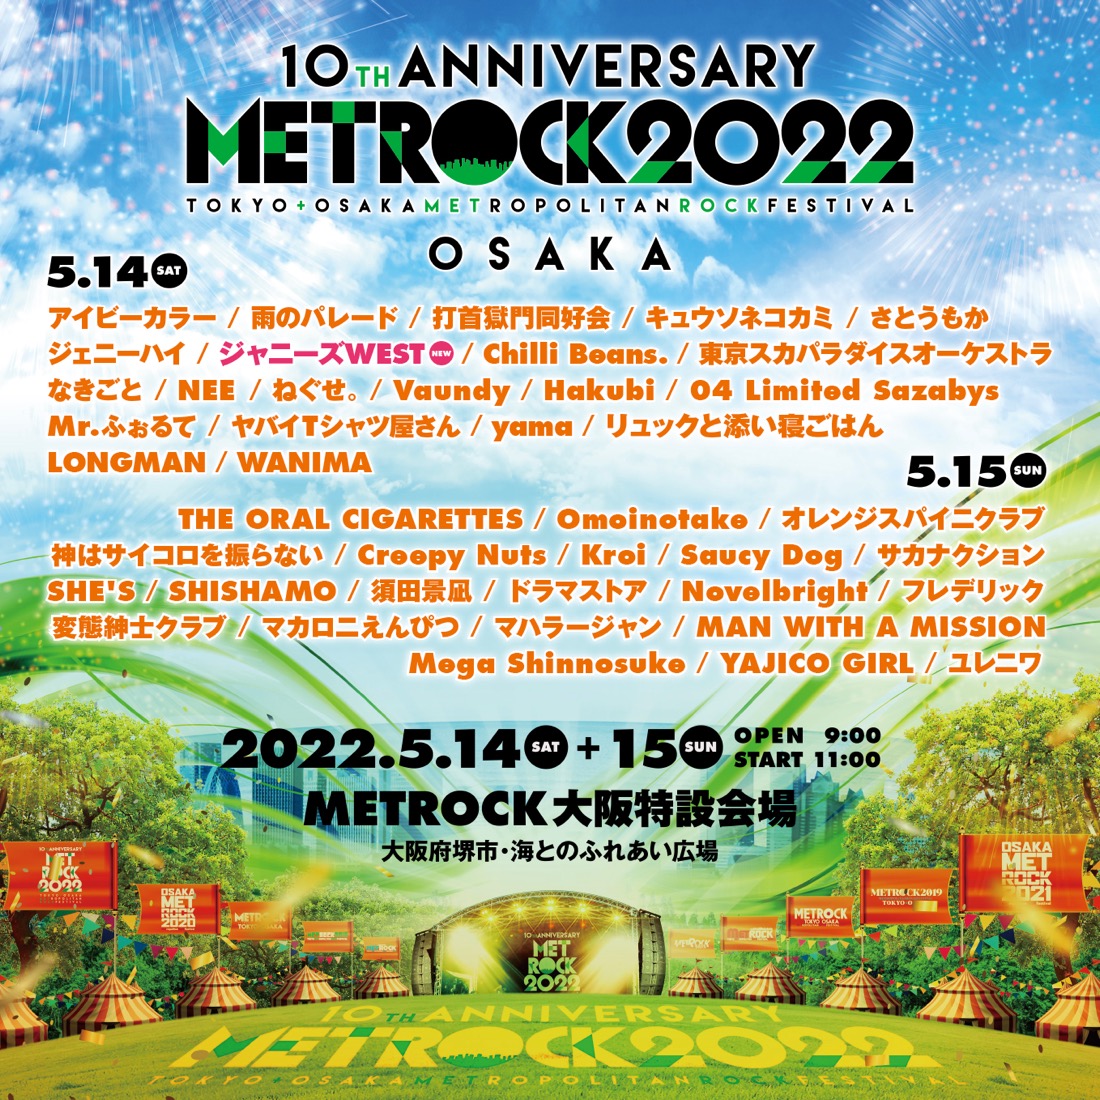 ジャニーズWEST、『METROCK』大阪公演に出演決定